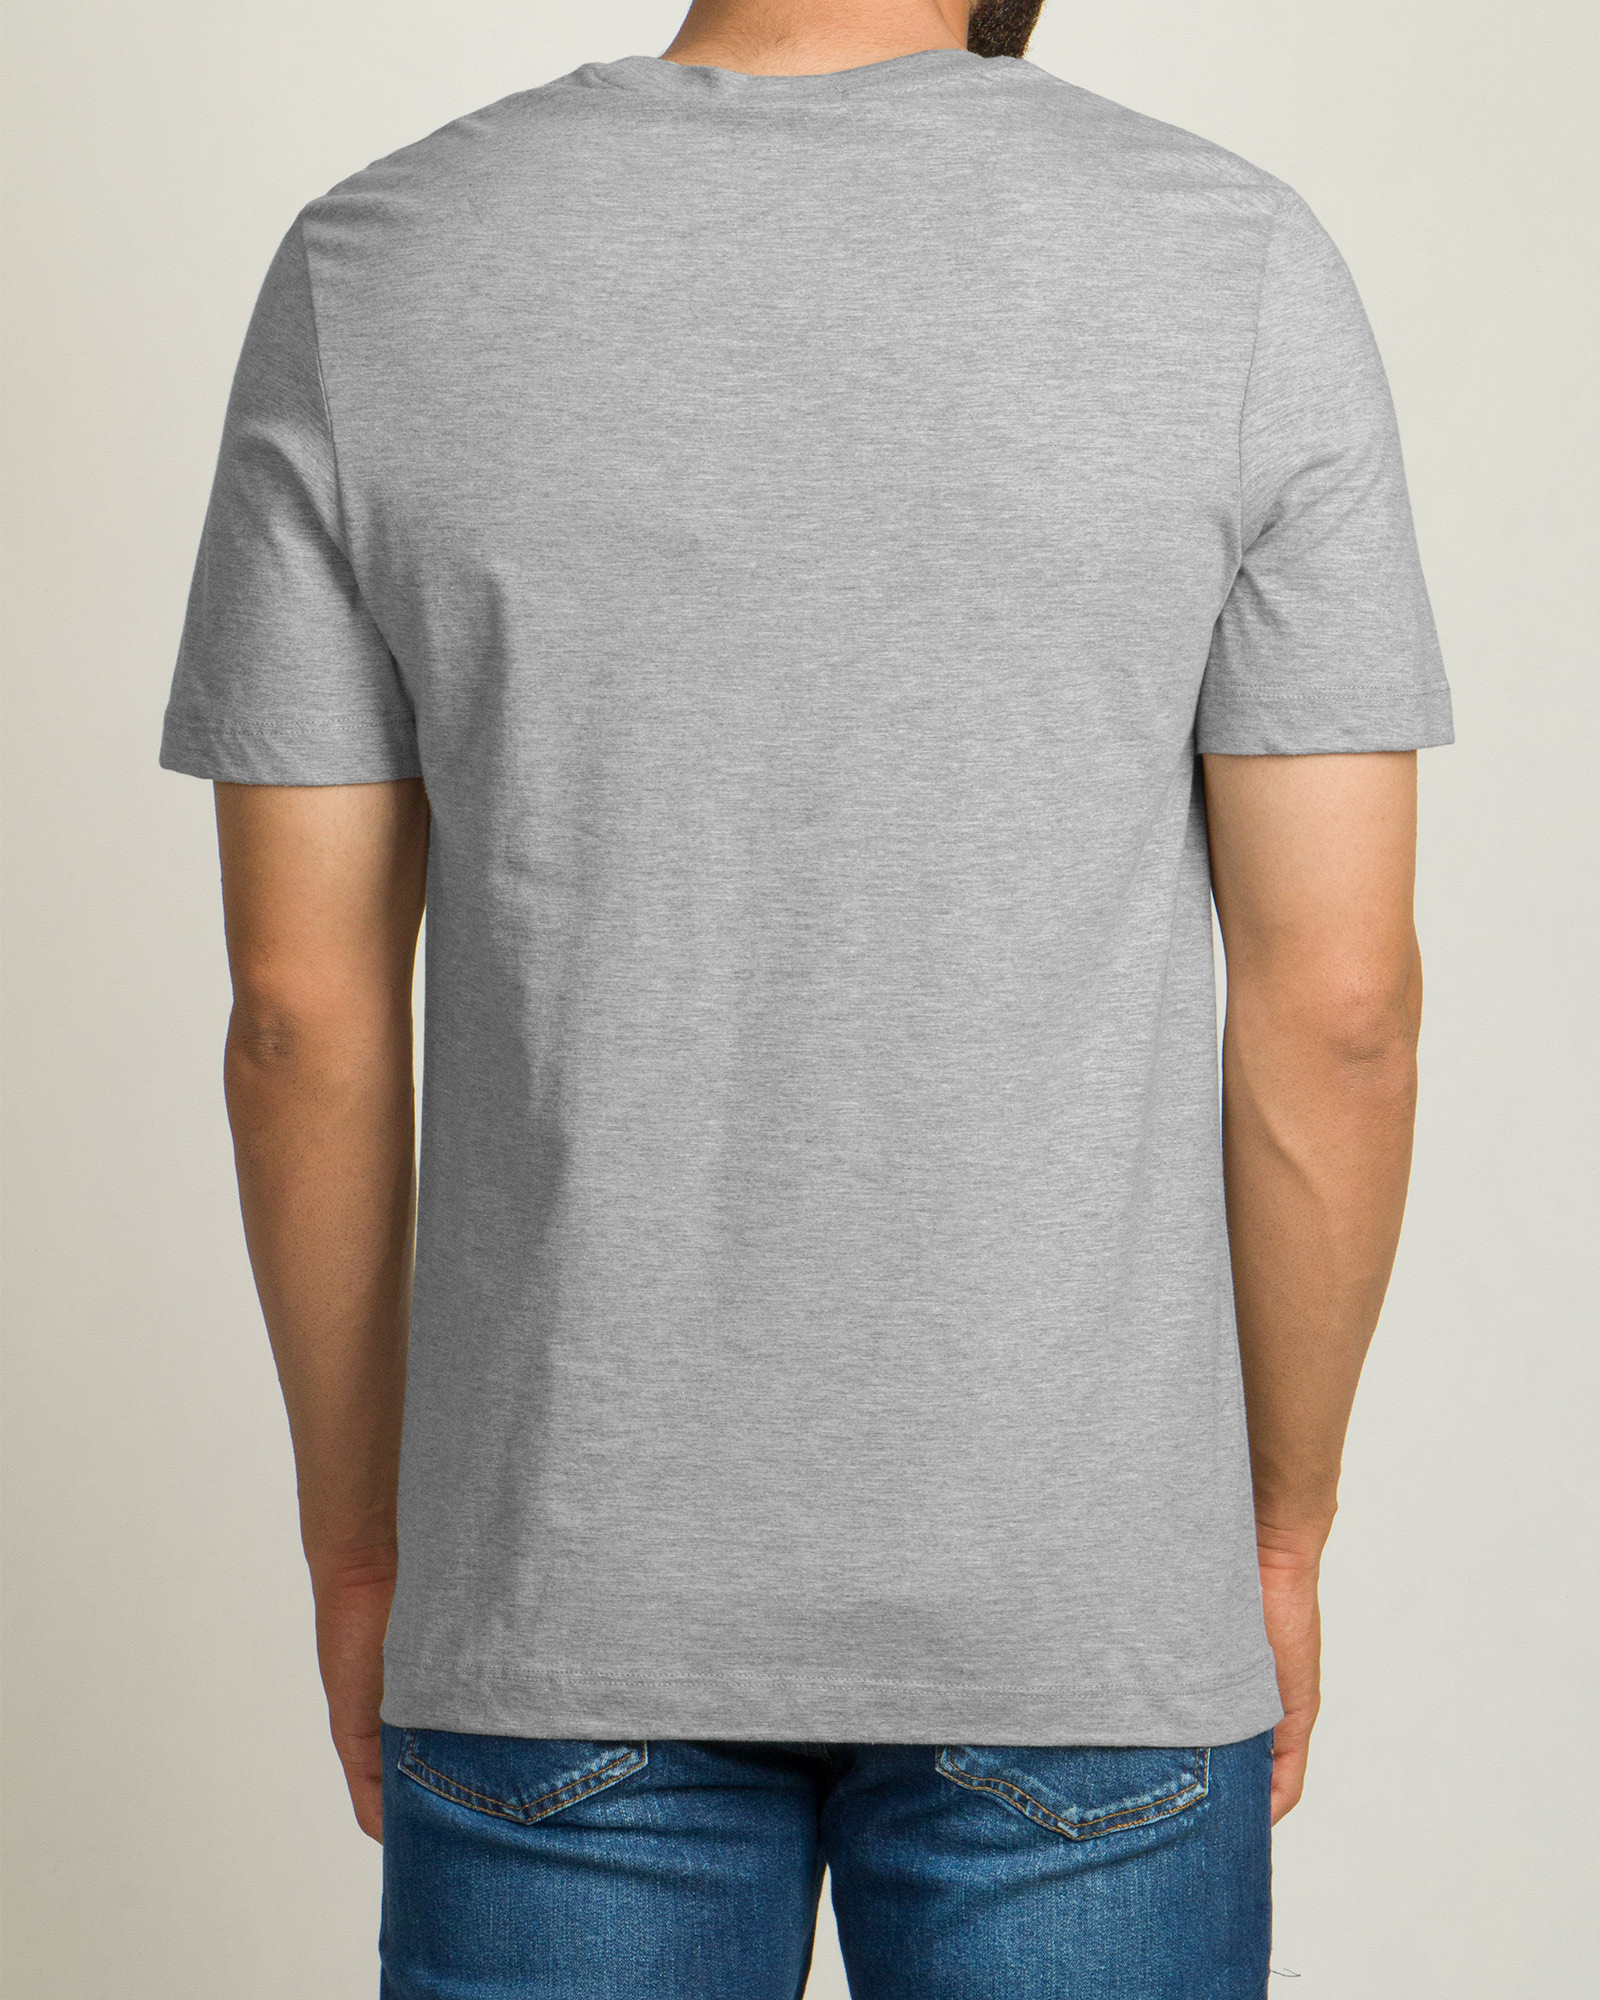 خرید تیشرت آستین کوتاه مردانه چاپ برجسته خاکستری 20196127